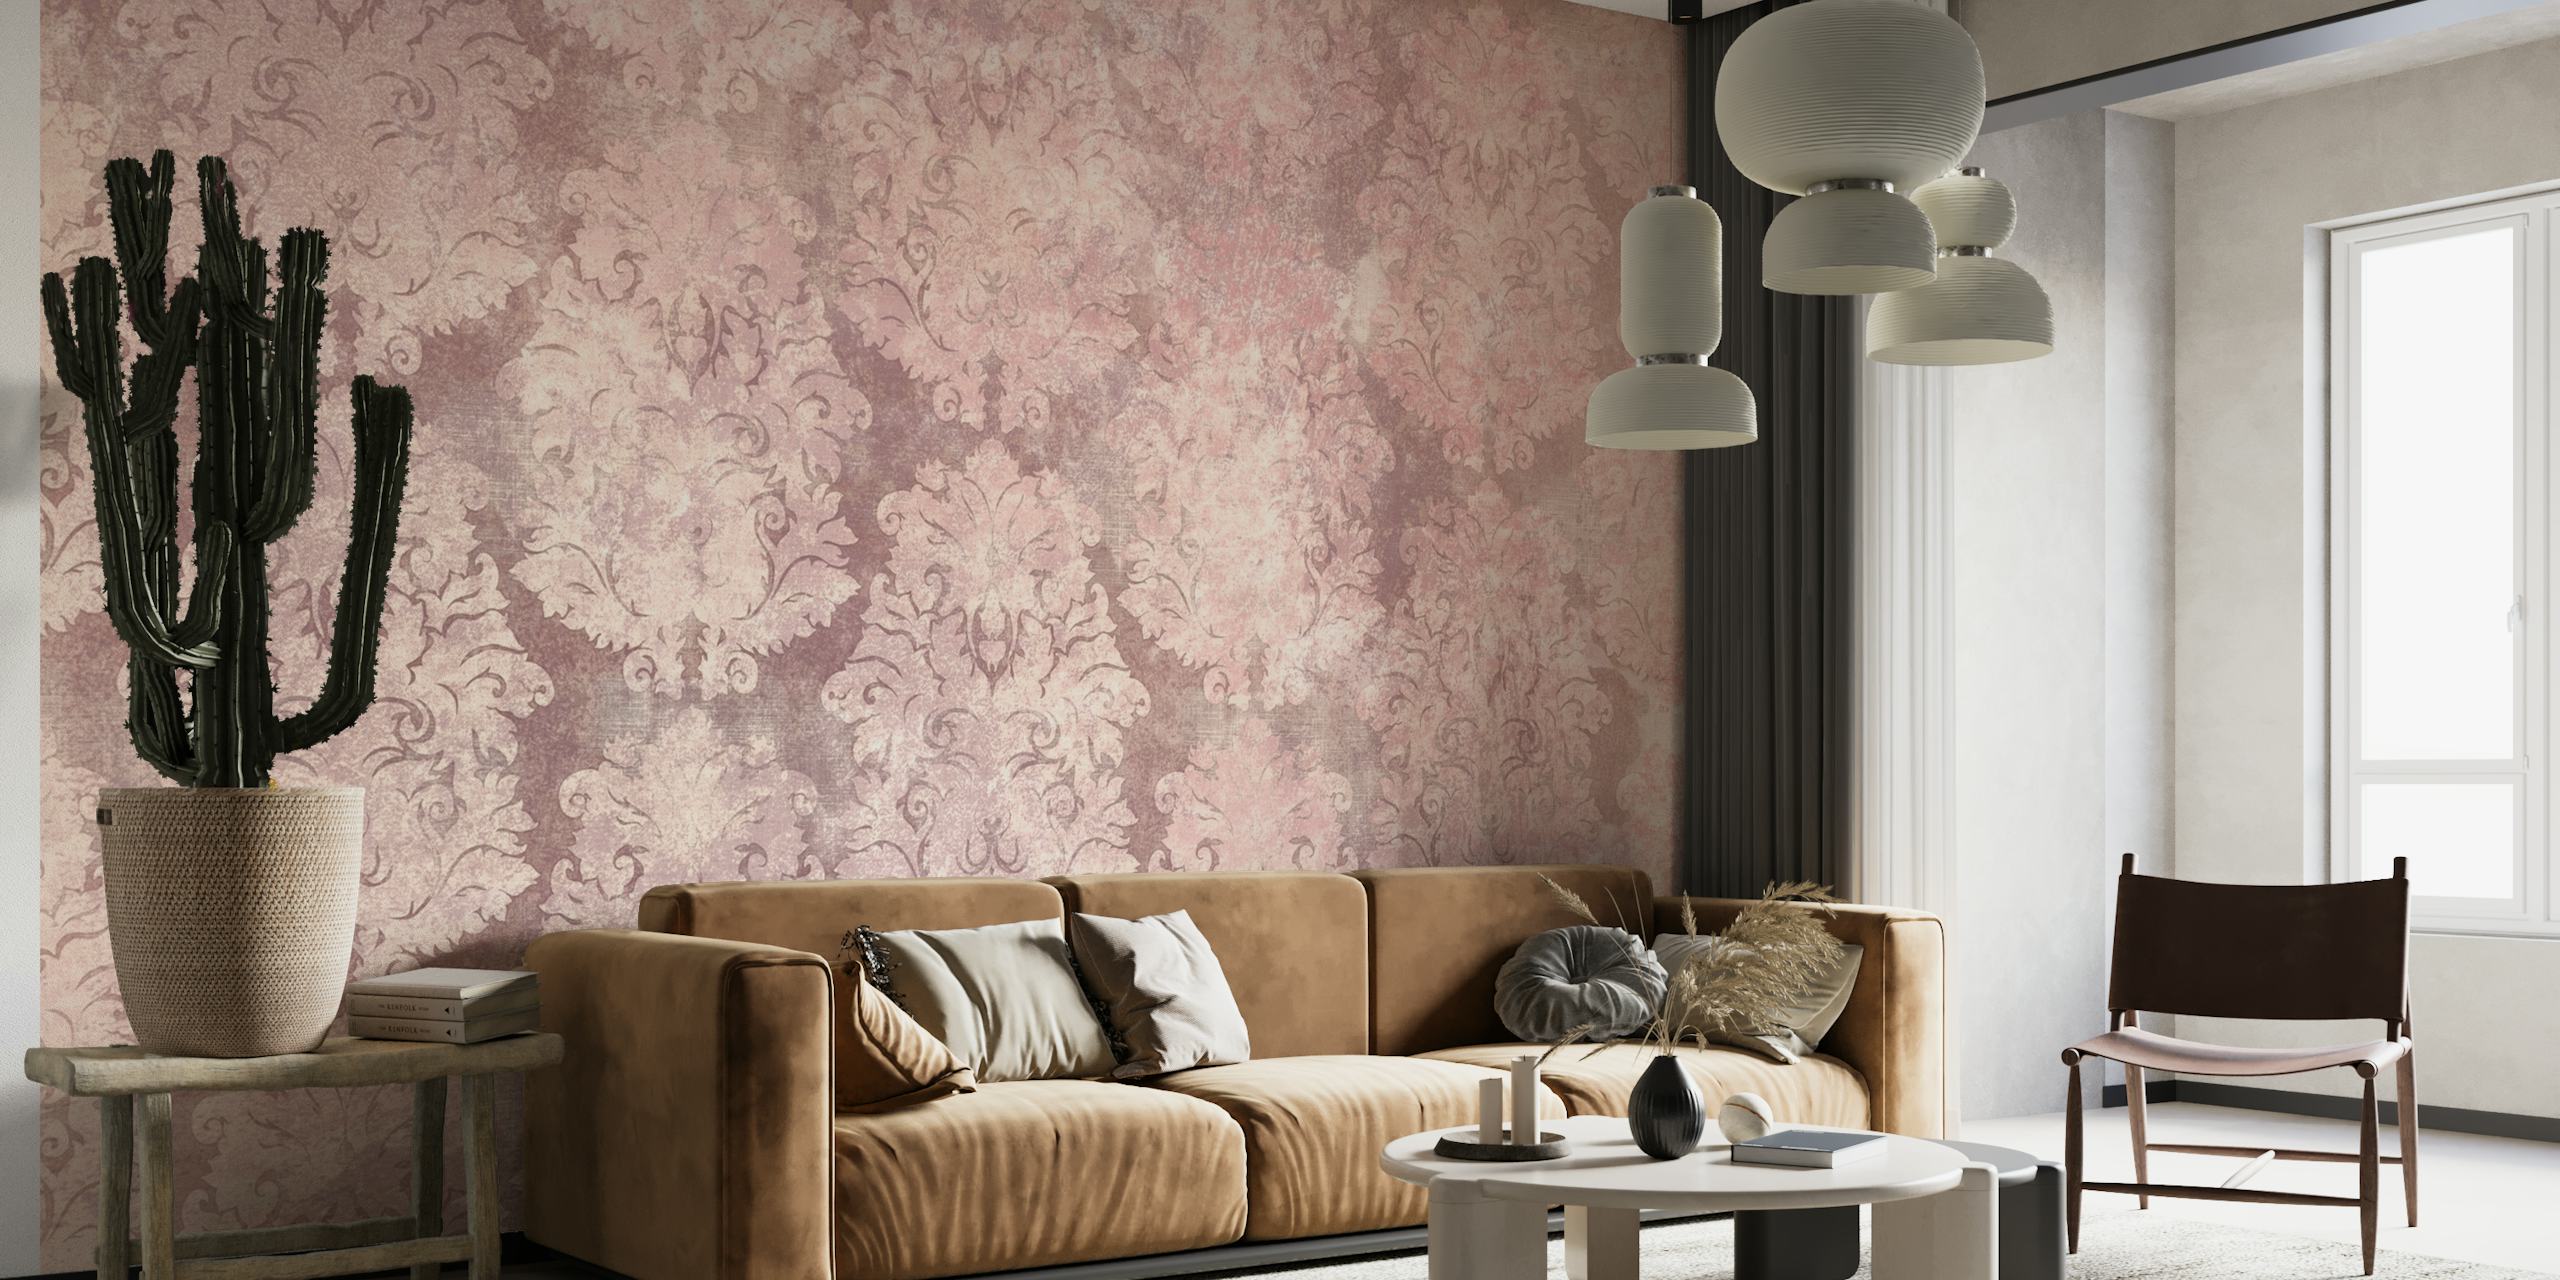 Yndefuldt blush pink damask mønster tapet, der tilføjer en vintage charme til interiøret